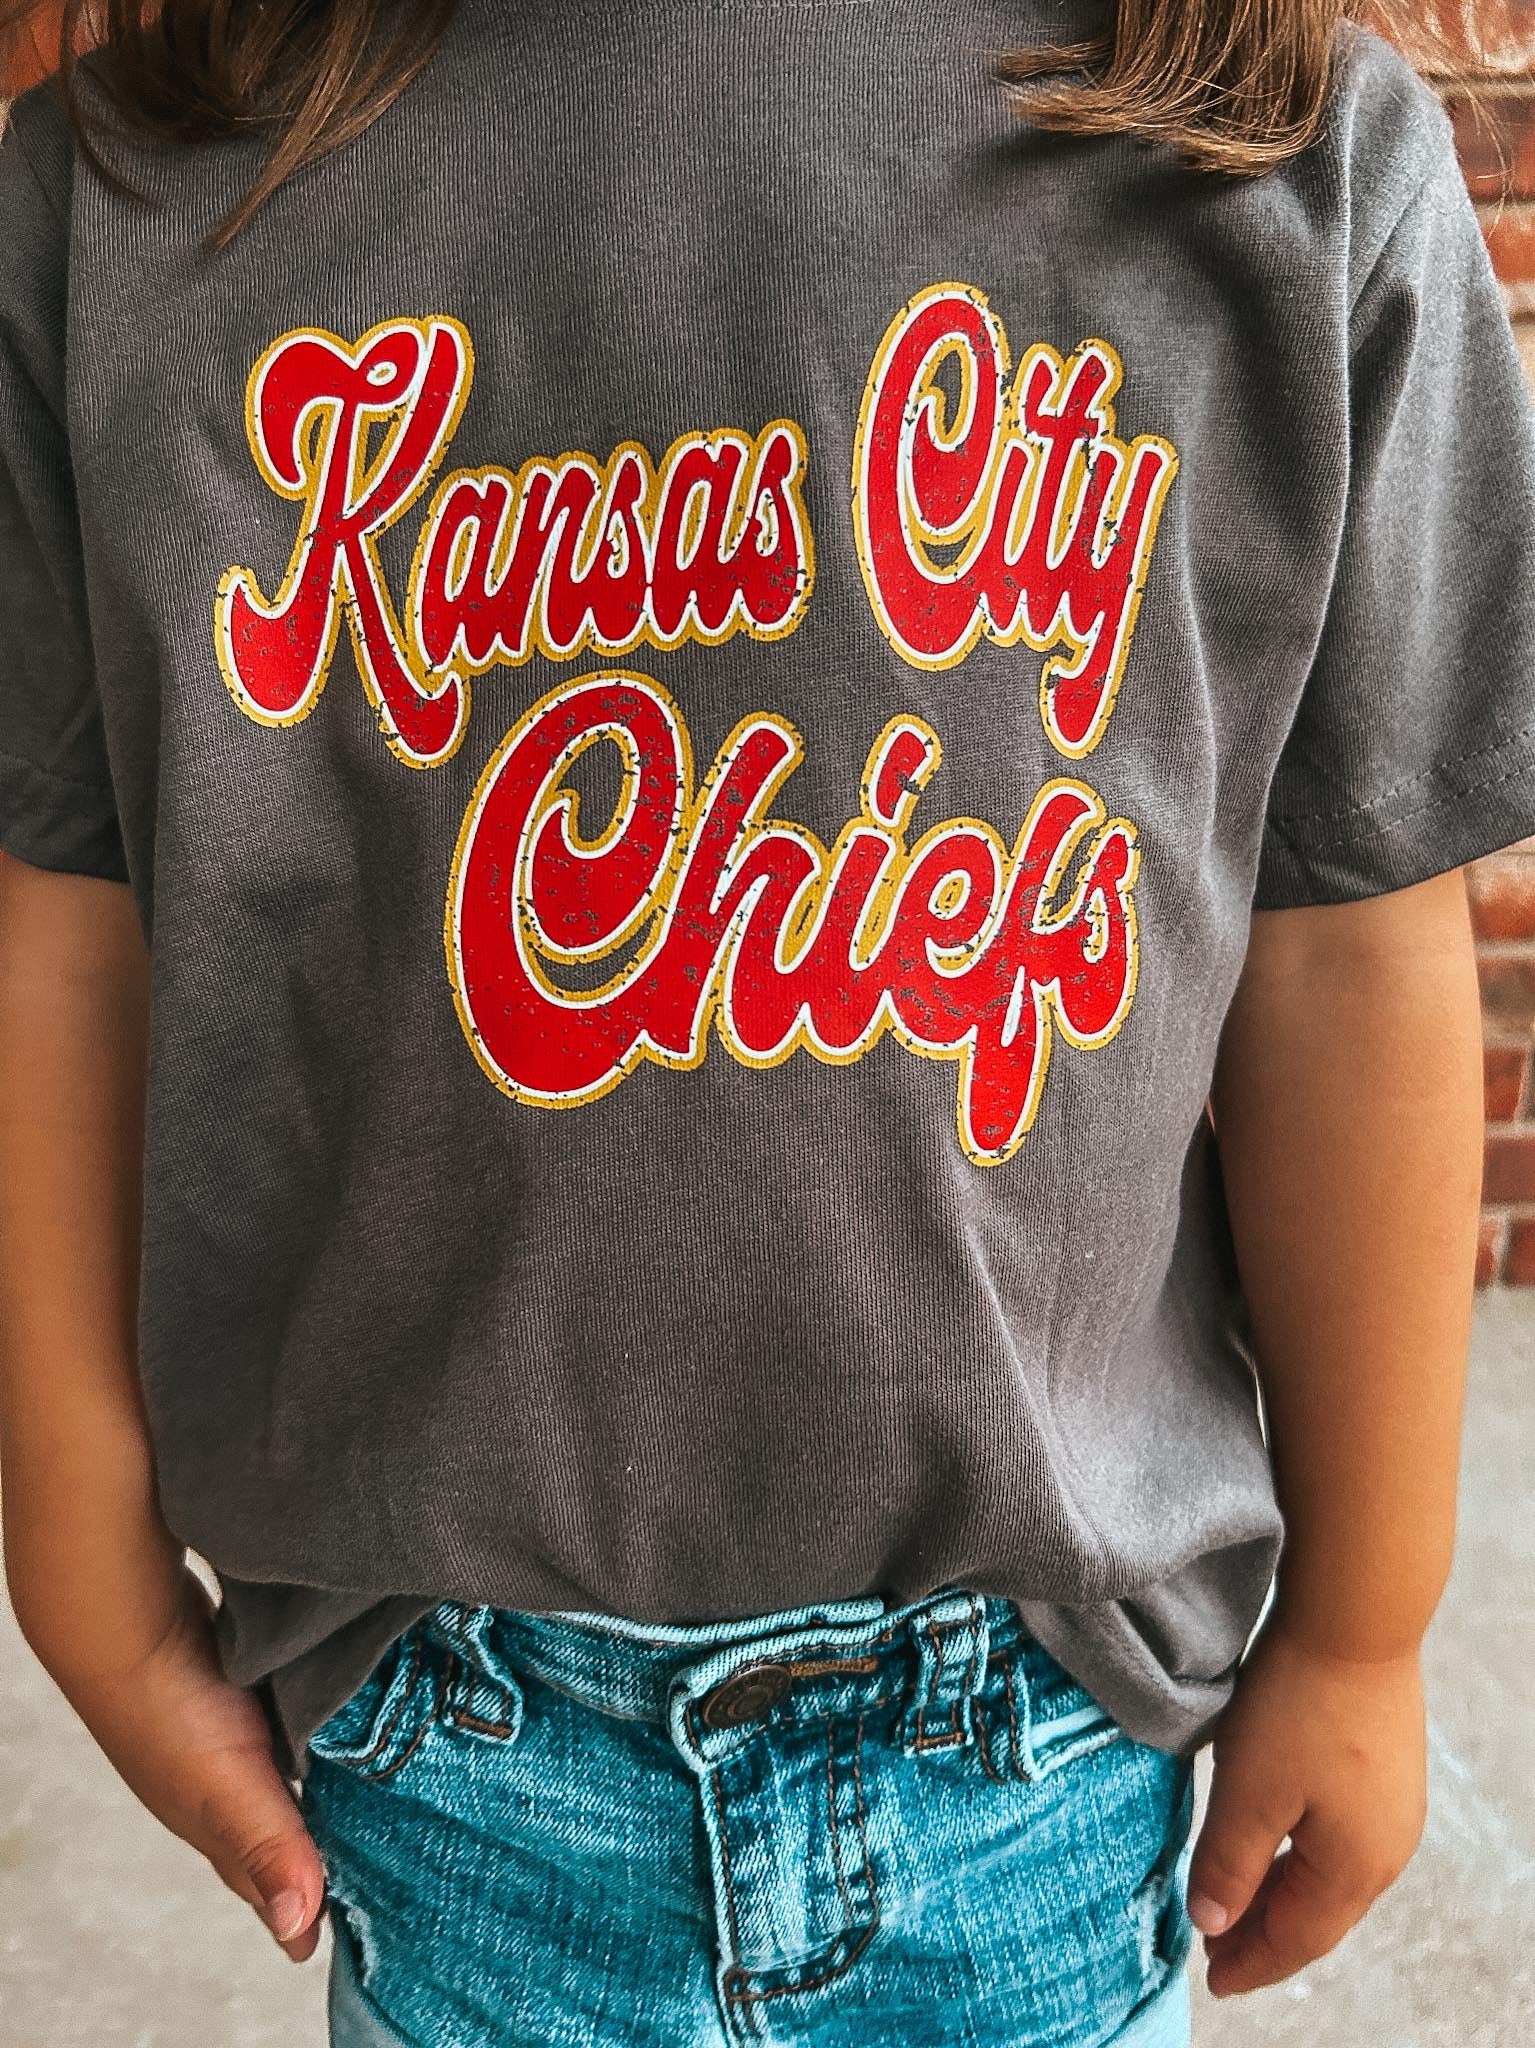 KC chiefs shirt - Kansas City Chiefs shirt - women’s chiefs shirt - leopard  chiefs